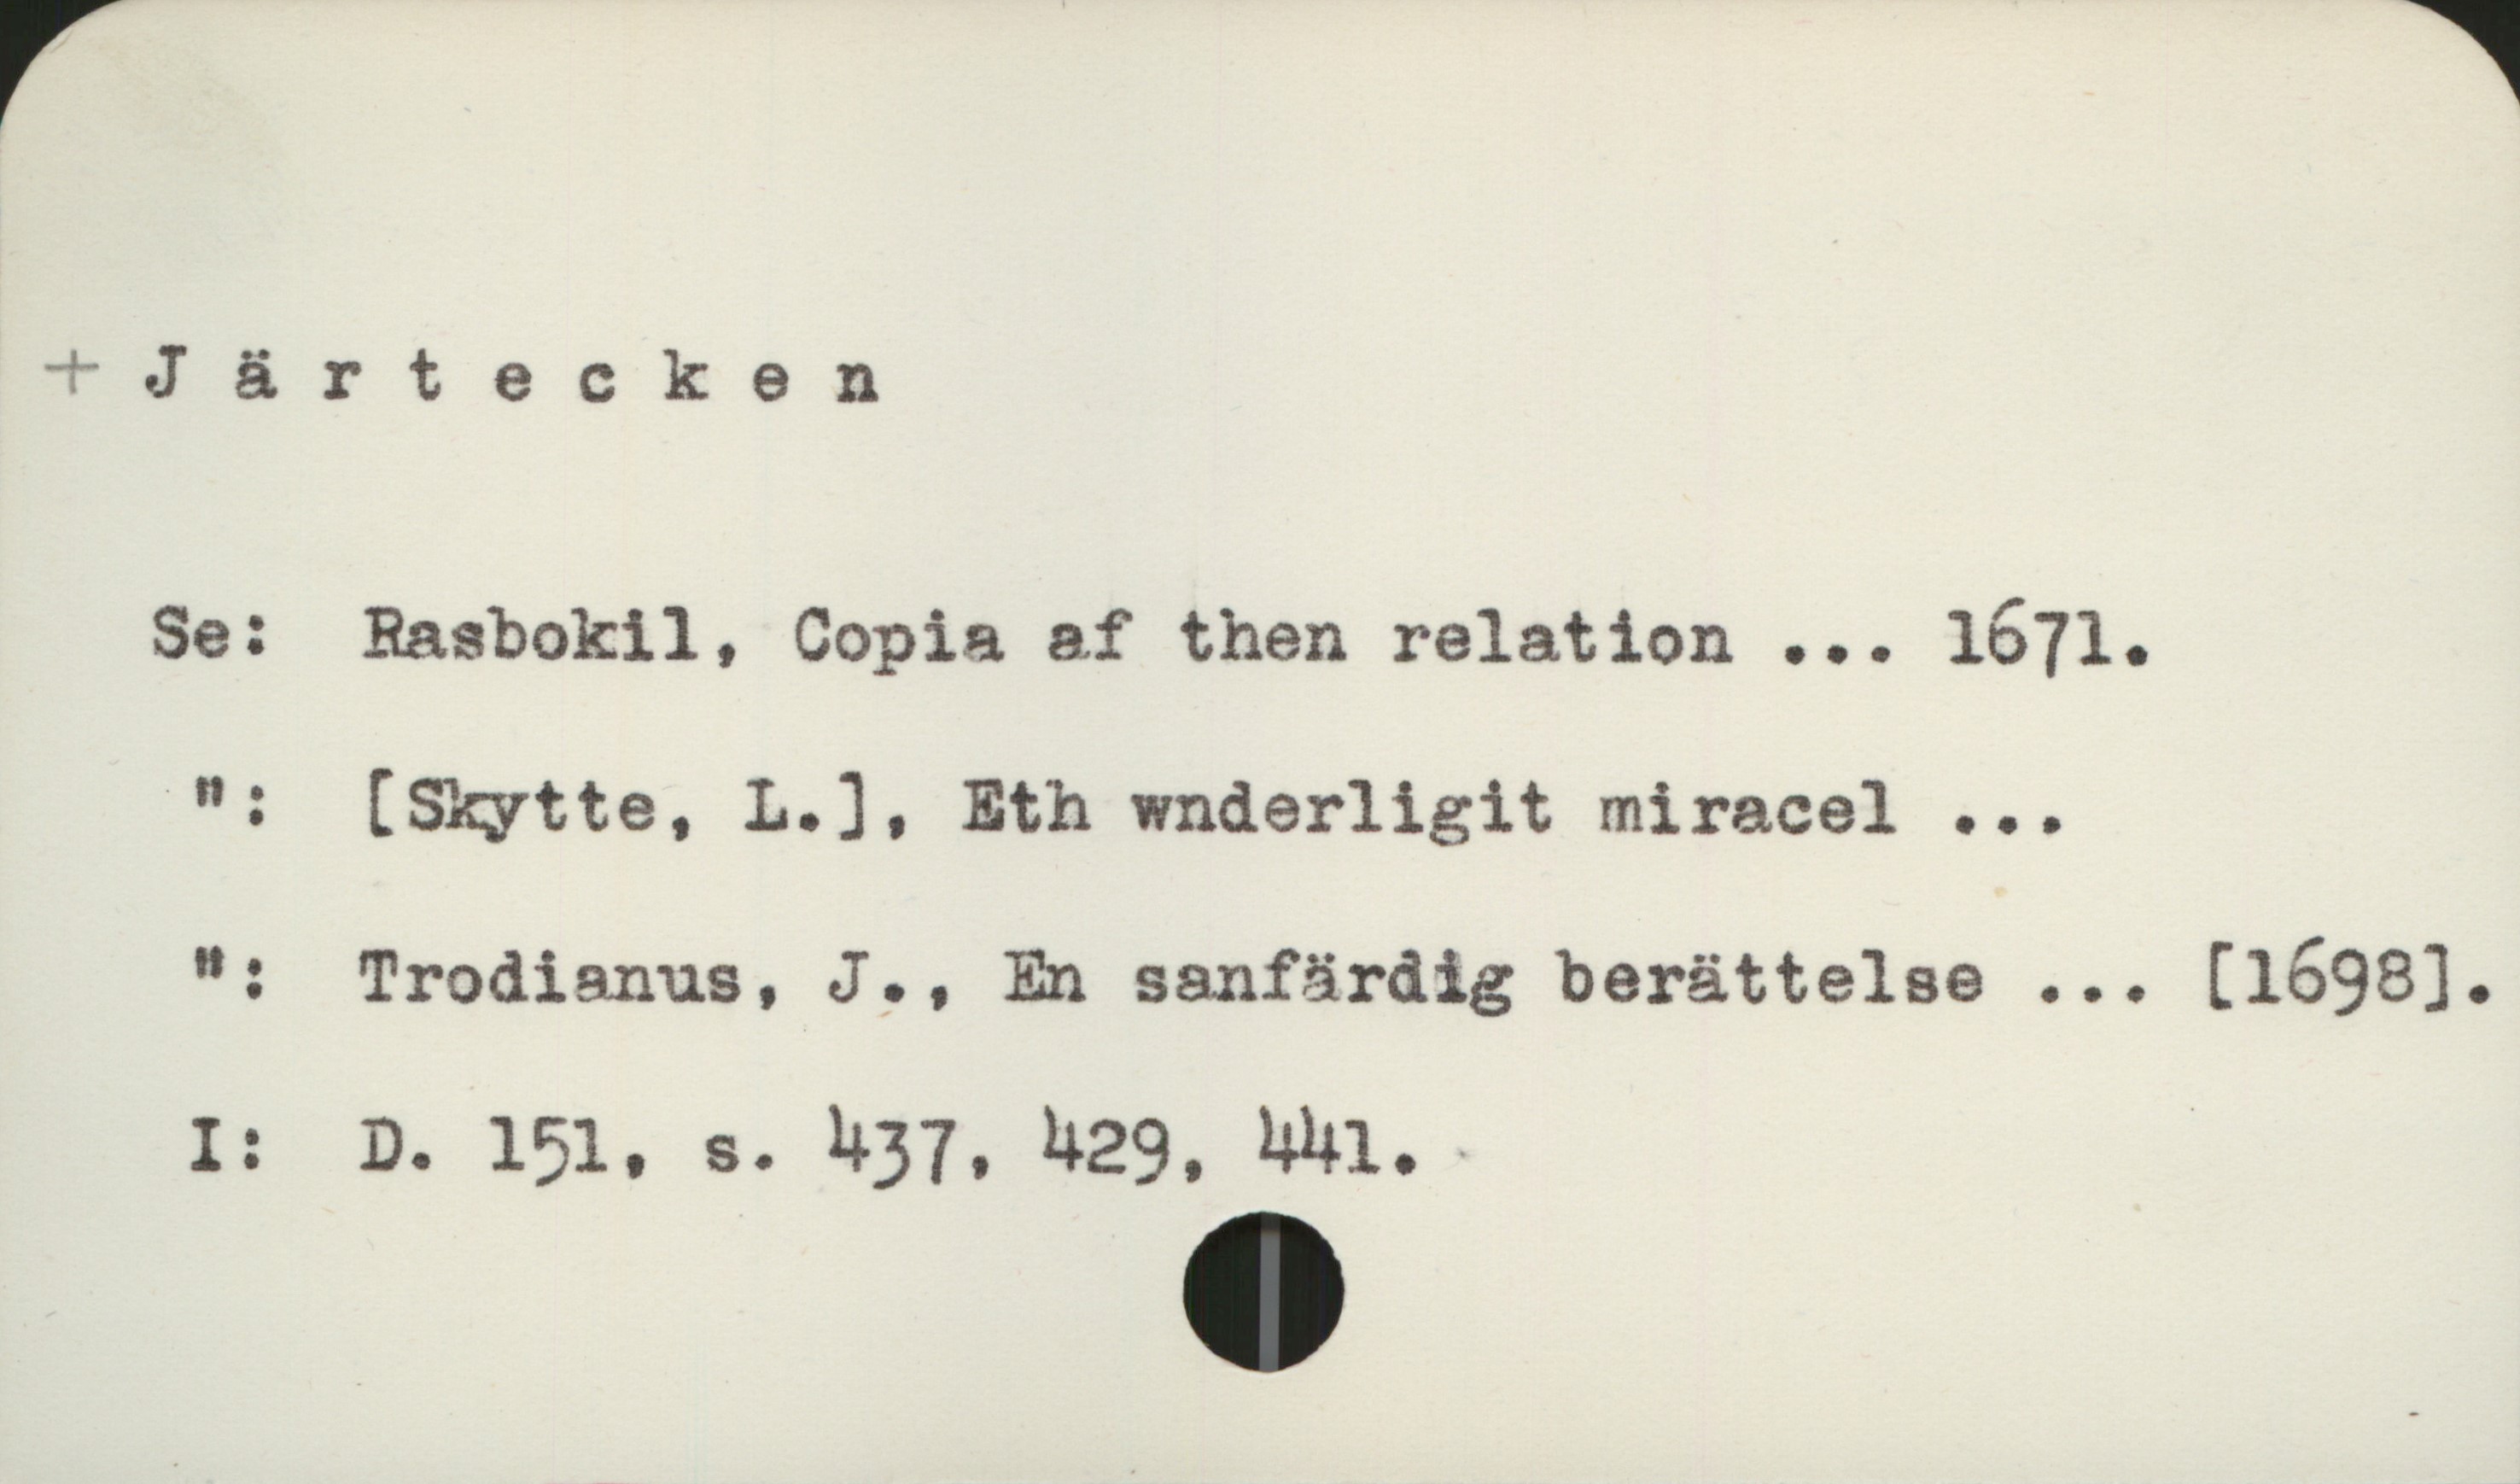 Järtecken Järtecken

Se:   Rasbokil, Copia af then relation ... 1671

  "  :  [Skytte, L.]. Eth wnderligit miracel ...

  "  :  Trodianus, J., En sanfärdig berättelse ... [1698].

I:      D. 151, s. 437, 429,  441